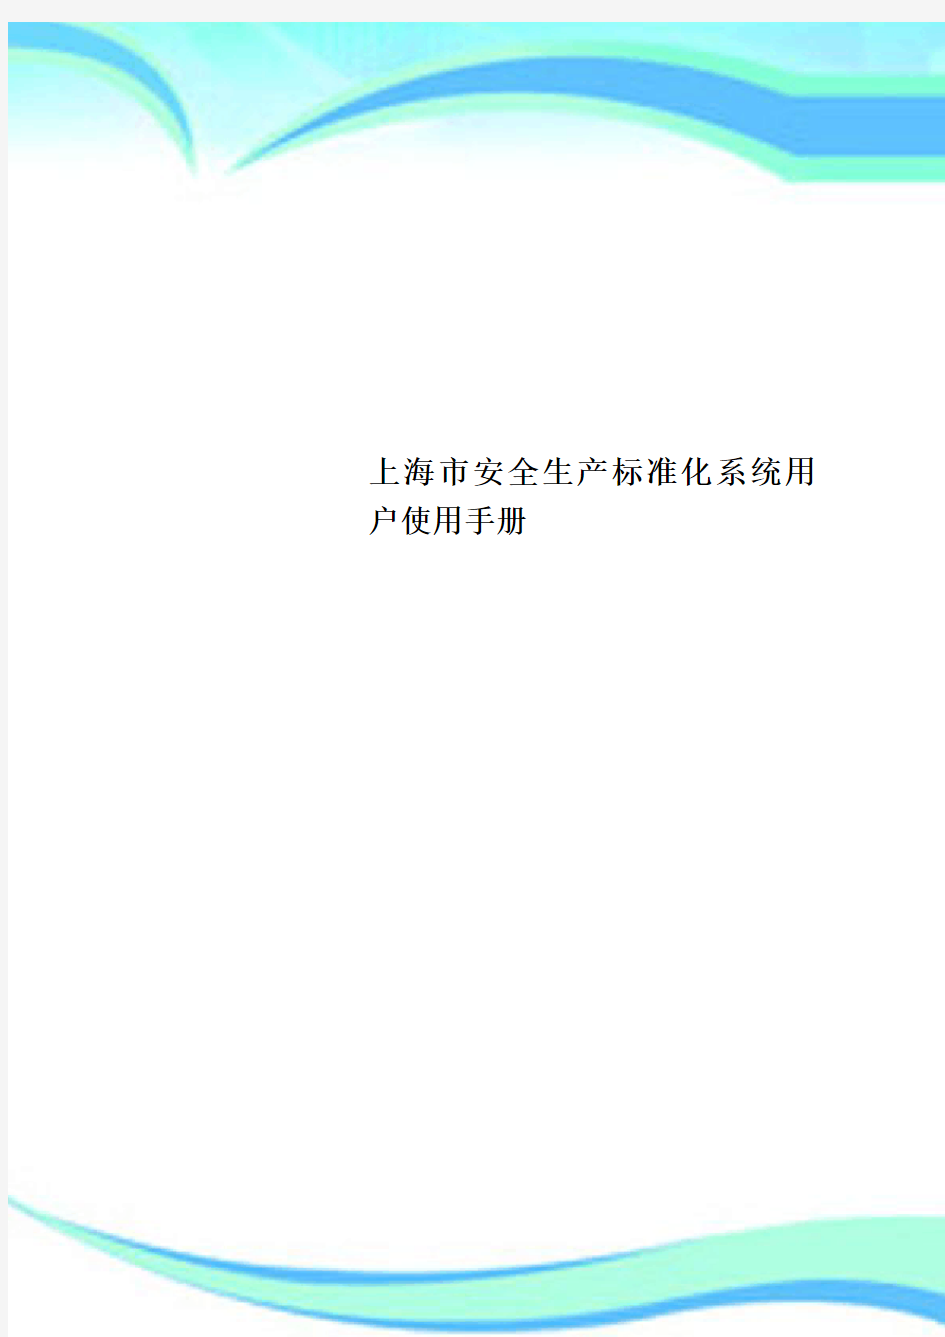 上海市安全生产标准化系统用户使用手册